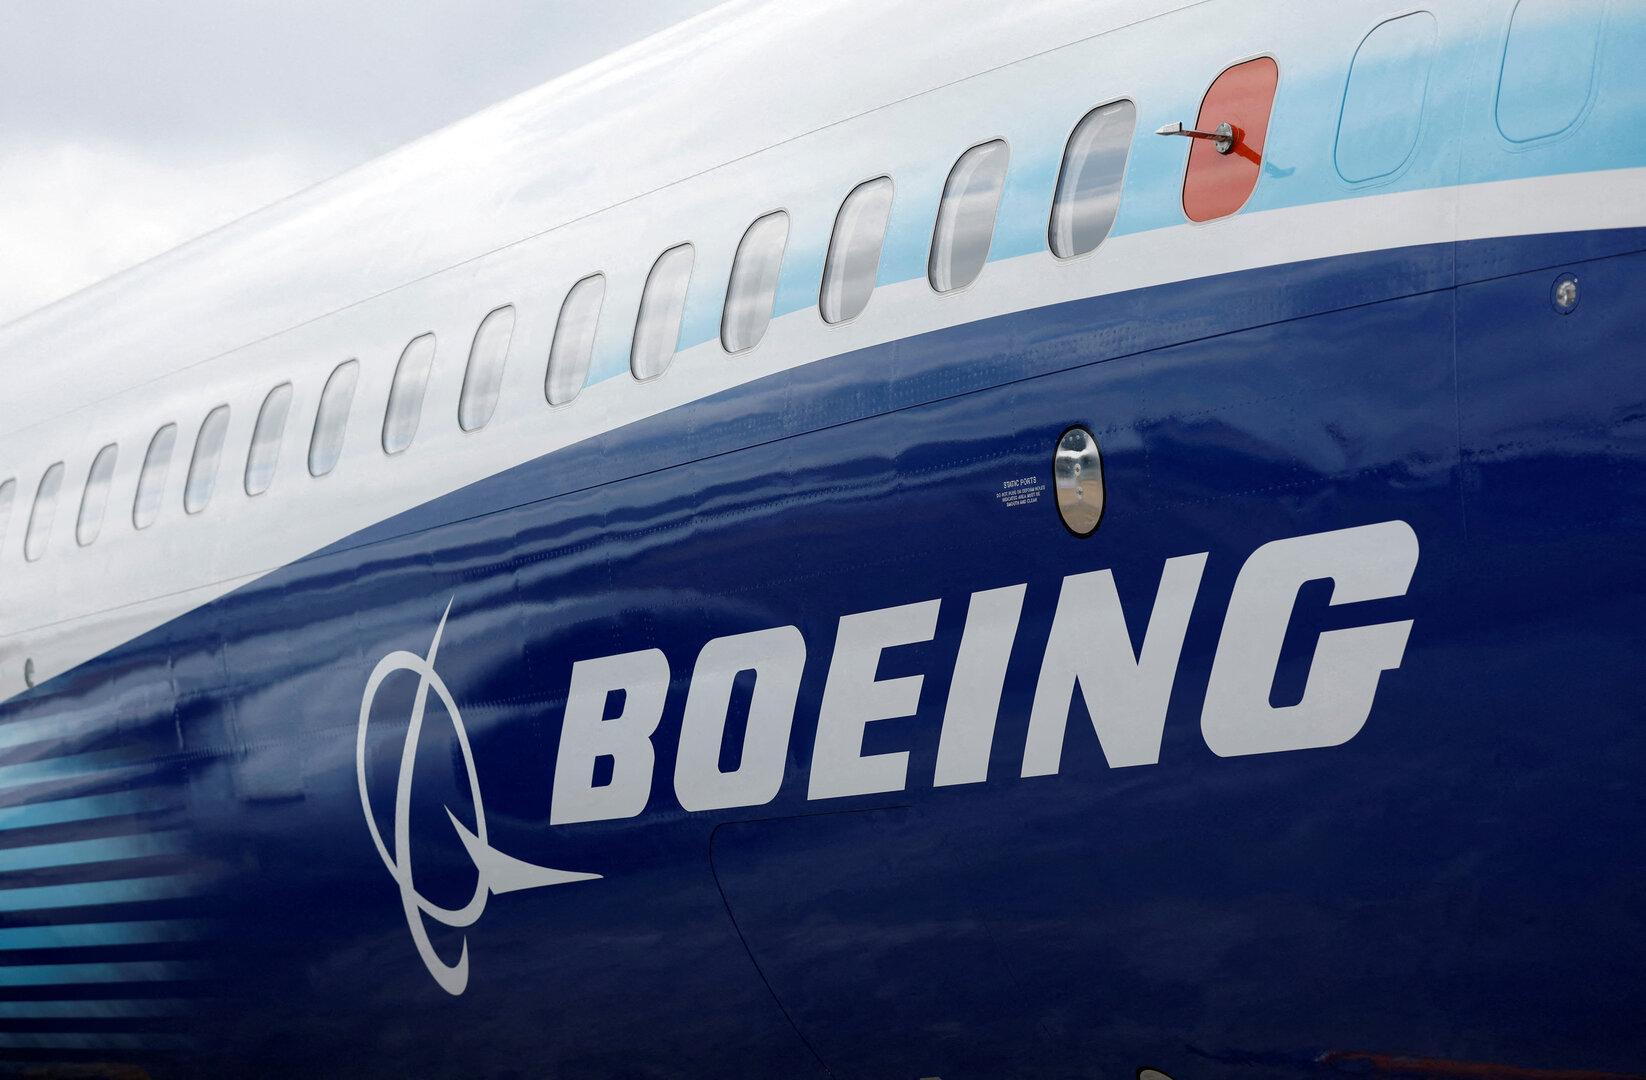 Boeing-Mängel: Zweiter Whistleblower innerhalb weniger Wochen tot